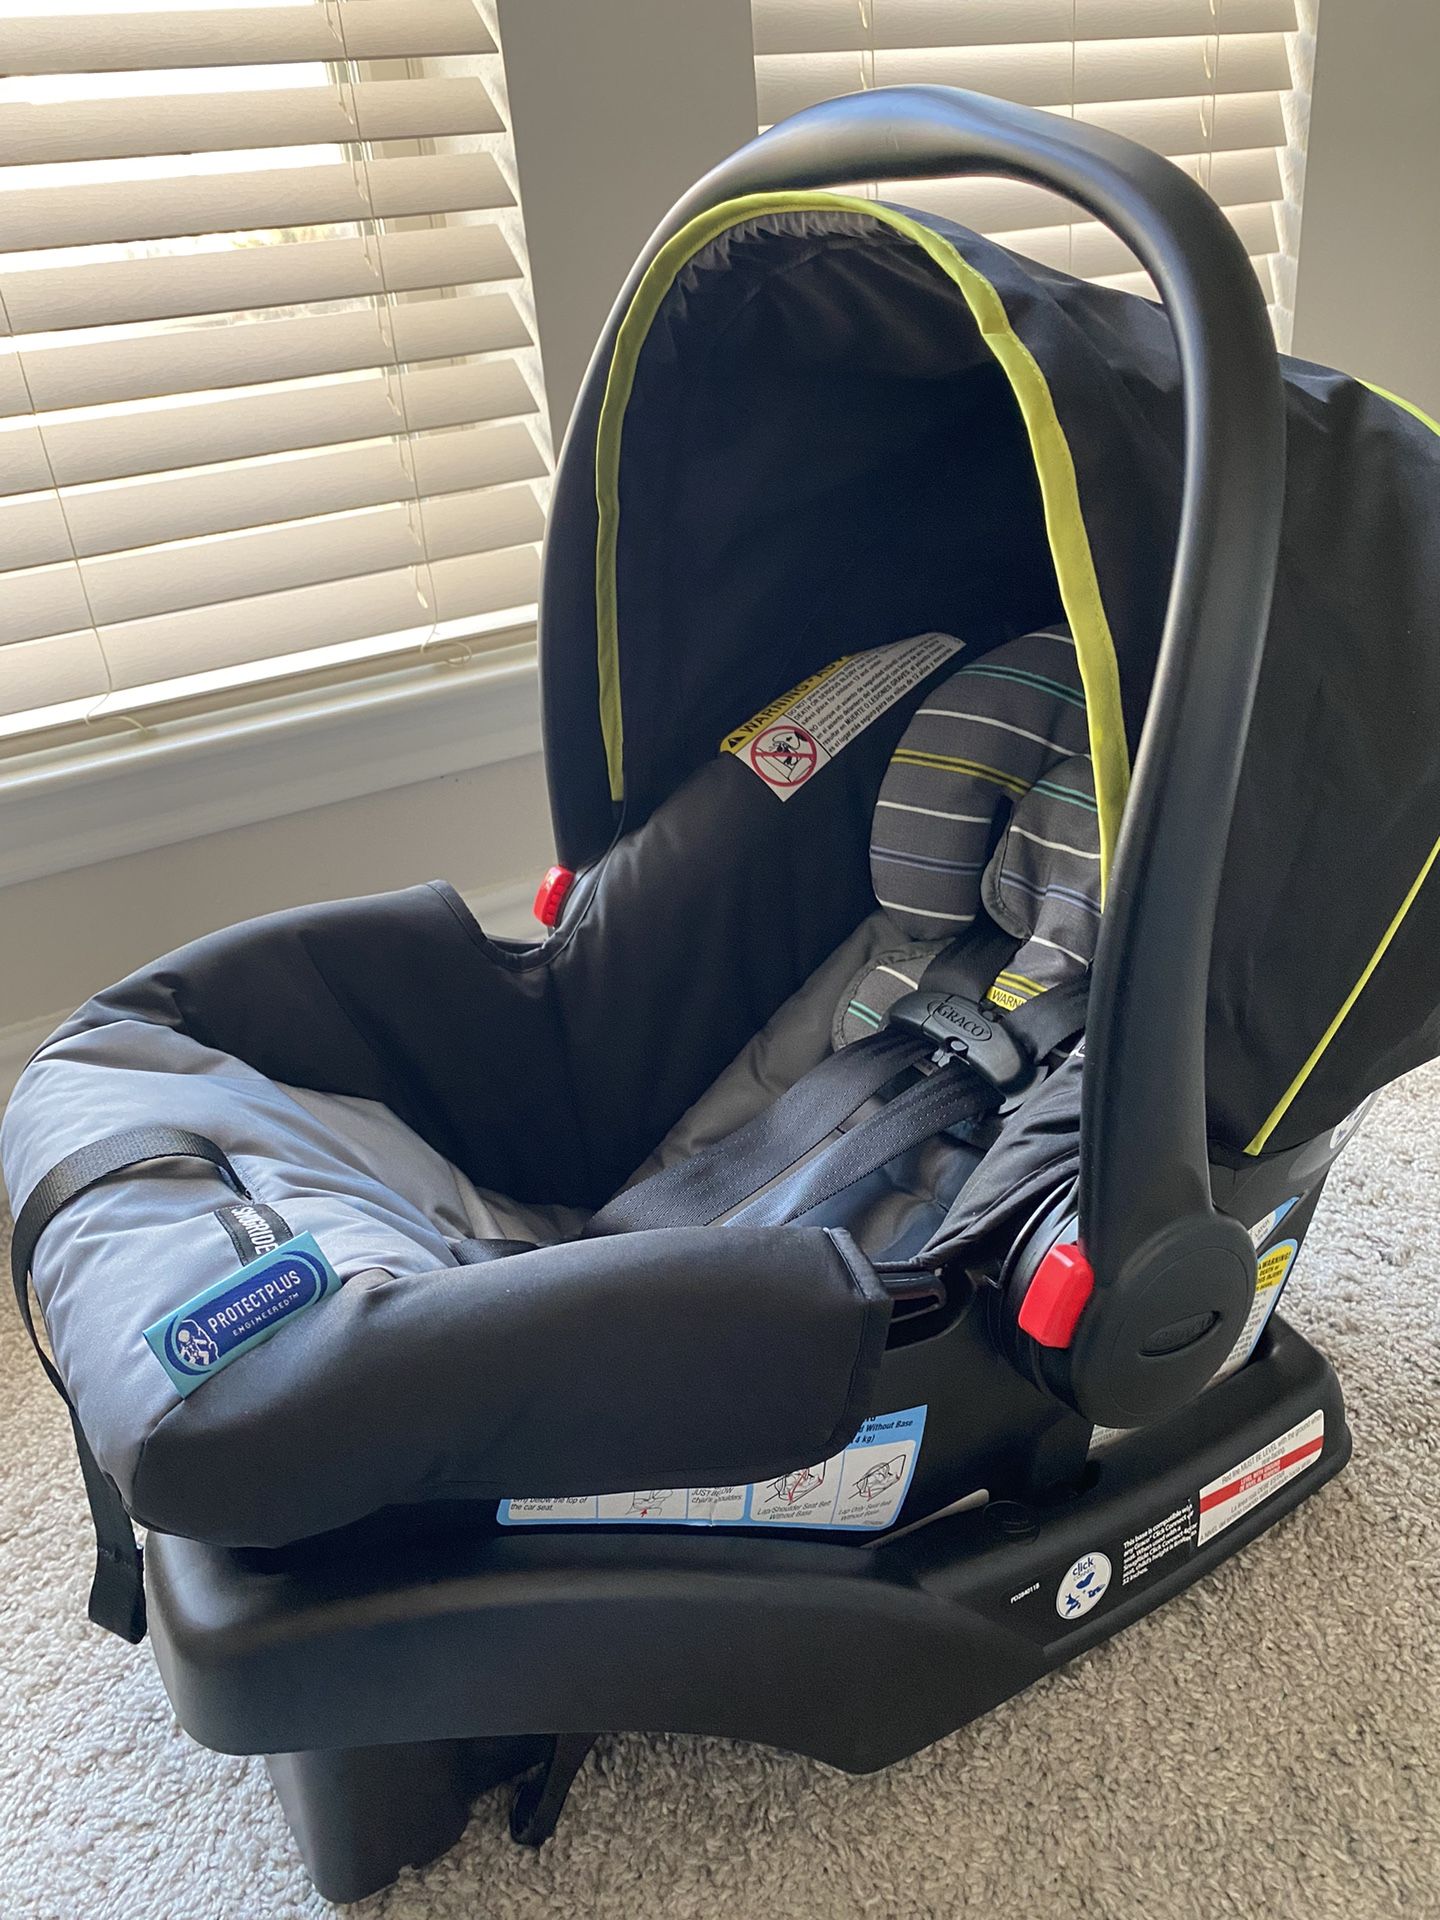 Graco SnugRide Click Connect 30 Infant Car Seat